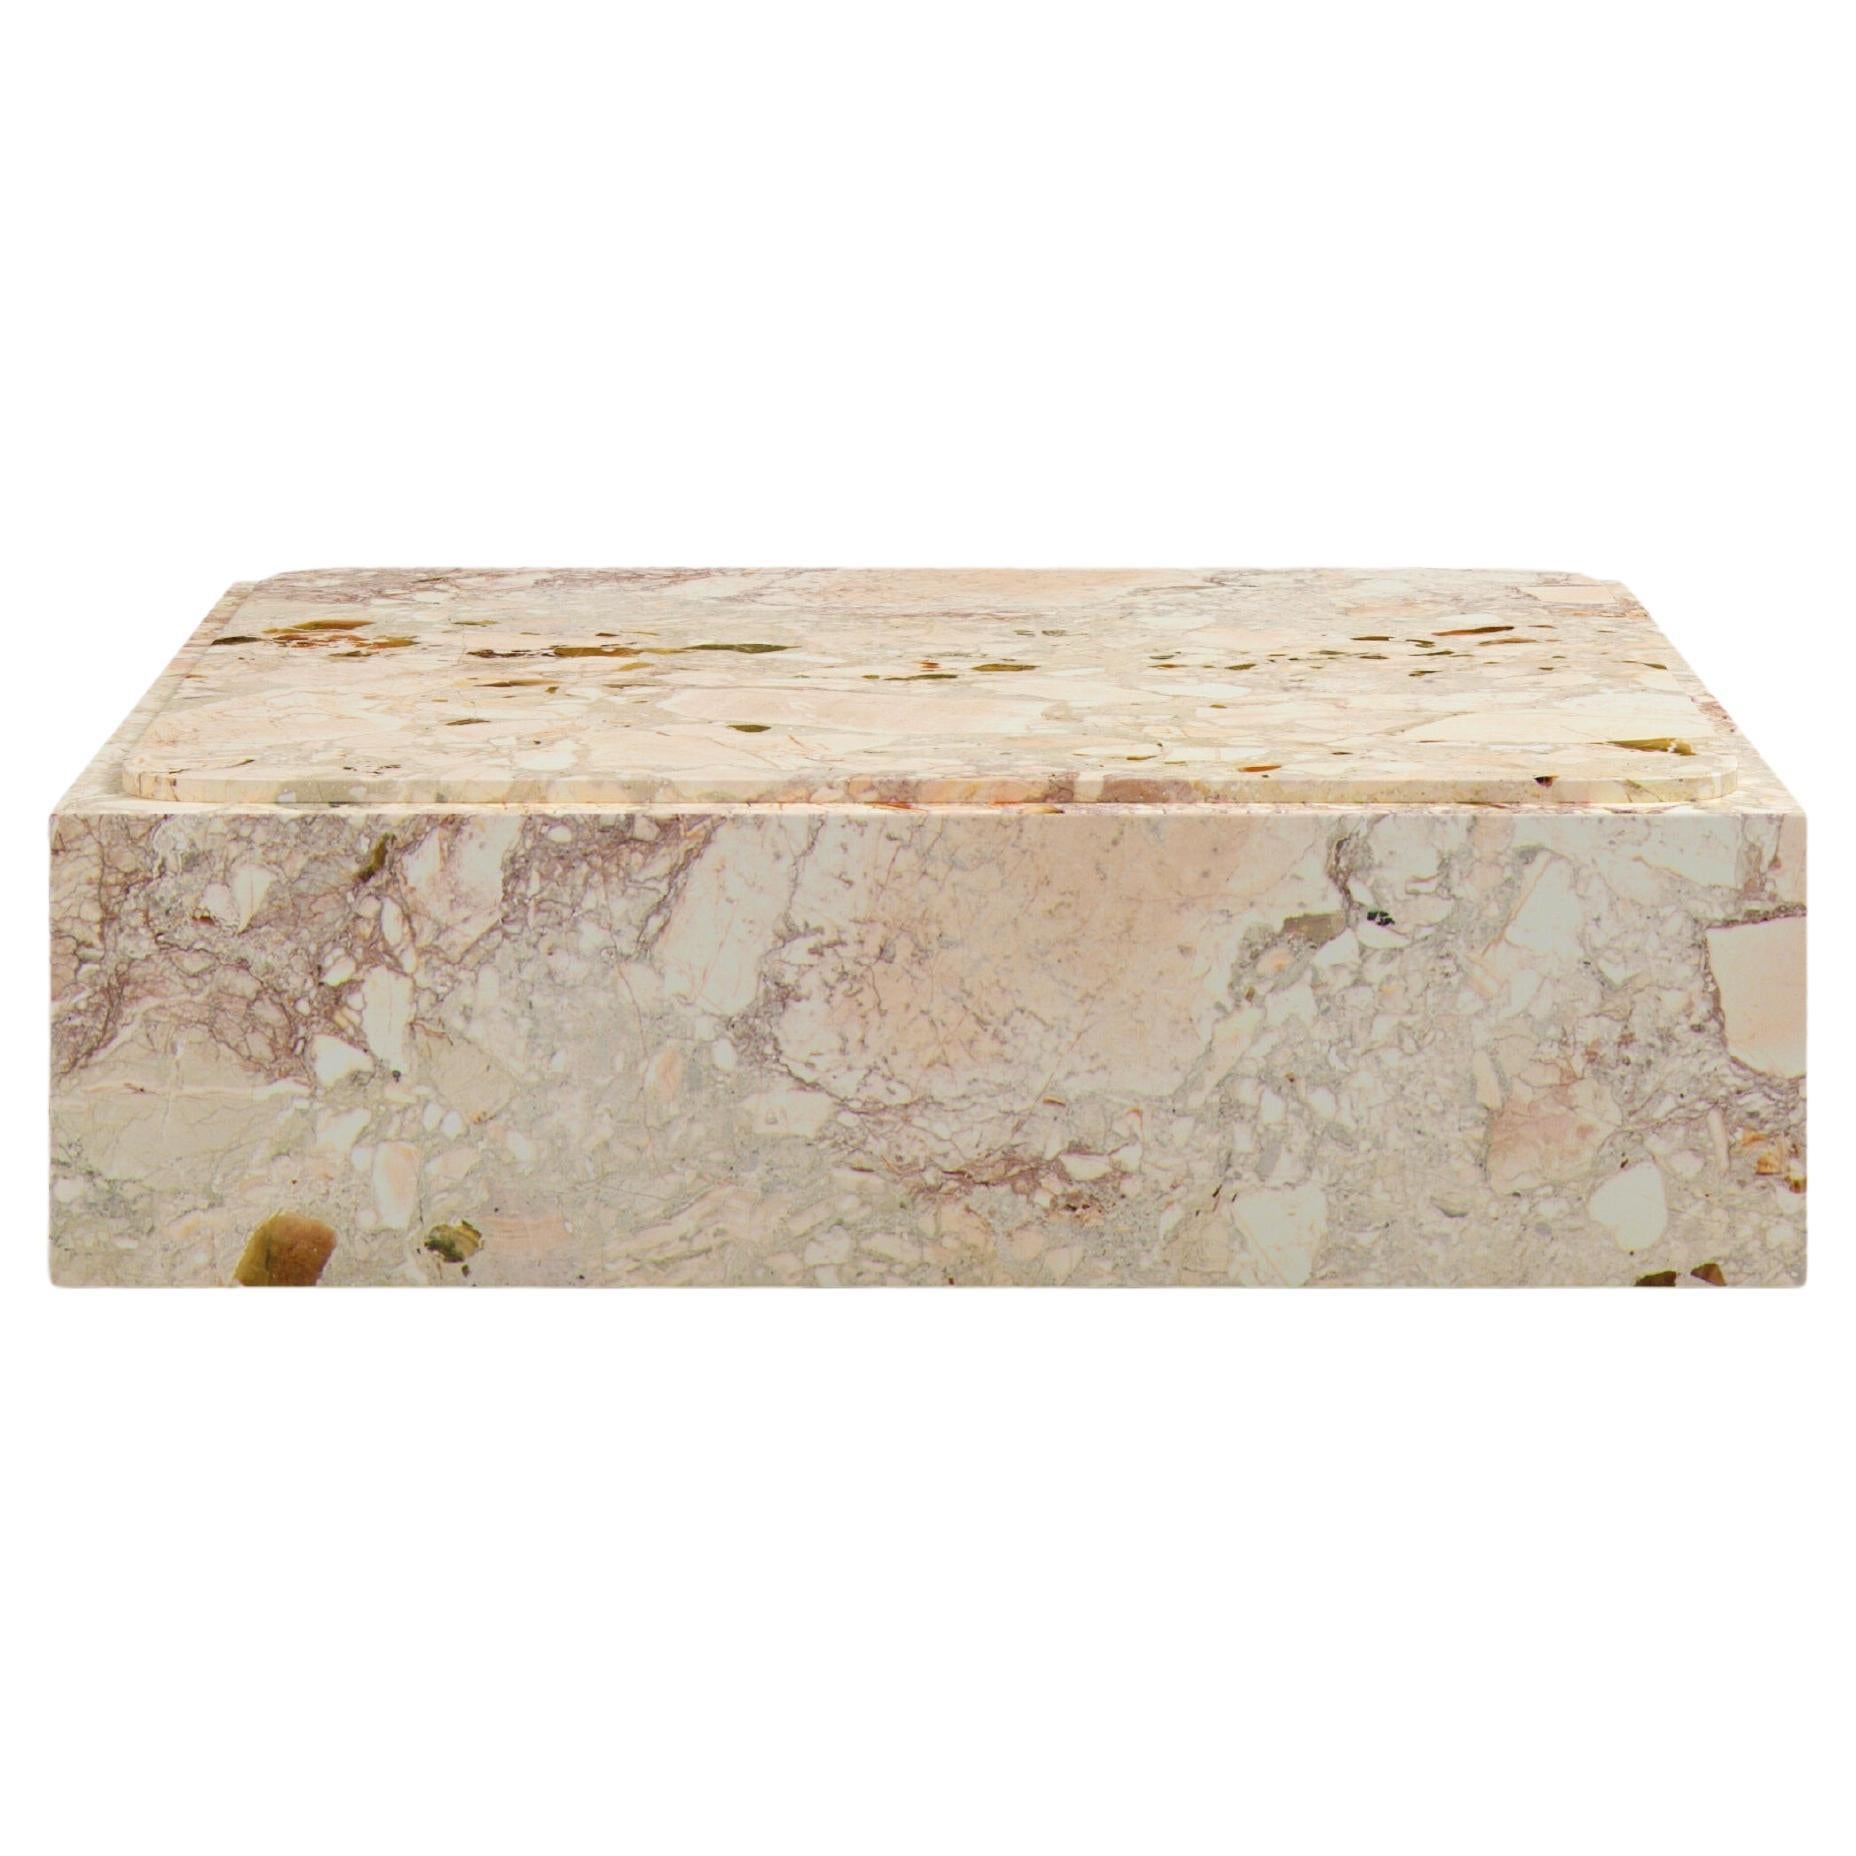 FORM(LA) Cubo Square Plinth Coffee Table 60”L x 60”W x 13”H Breccia Rosa Marble